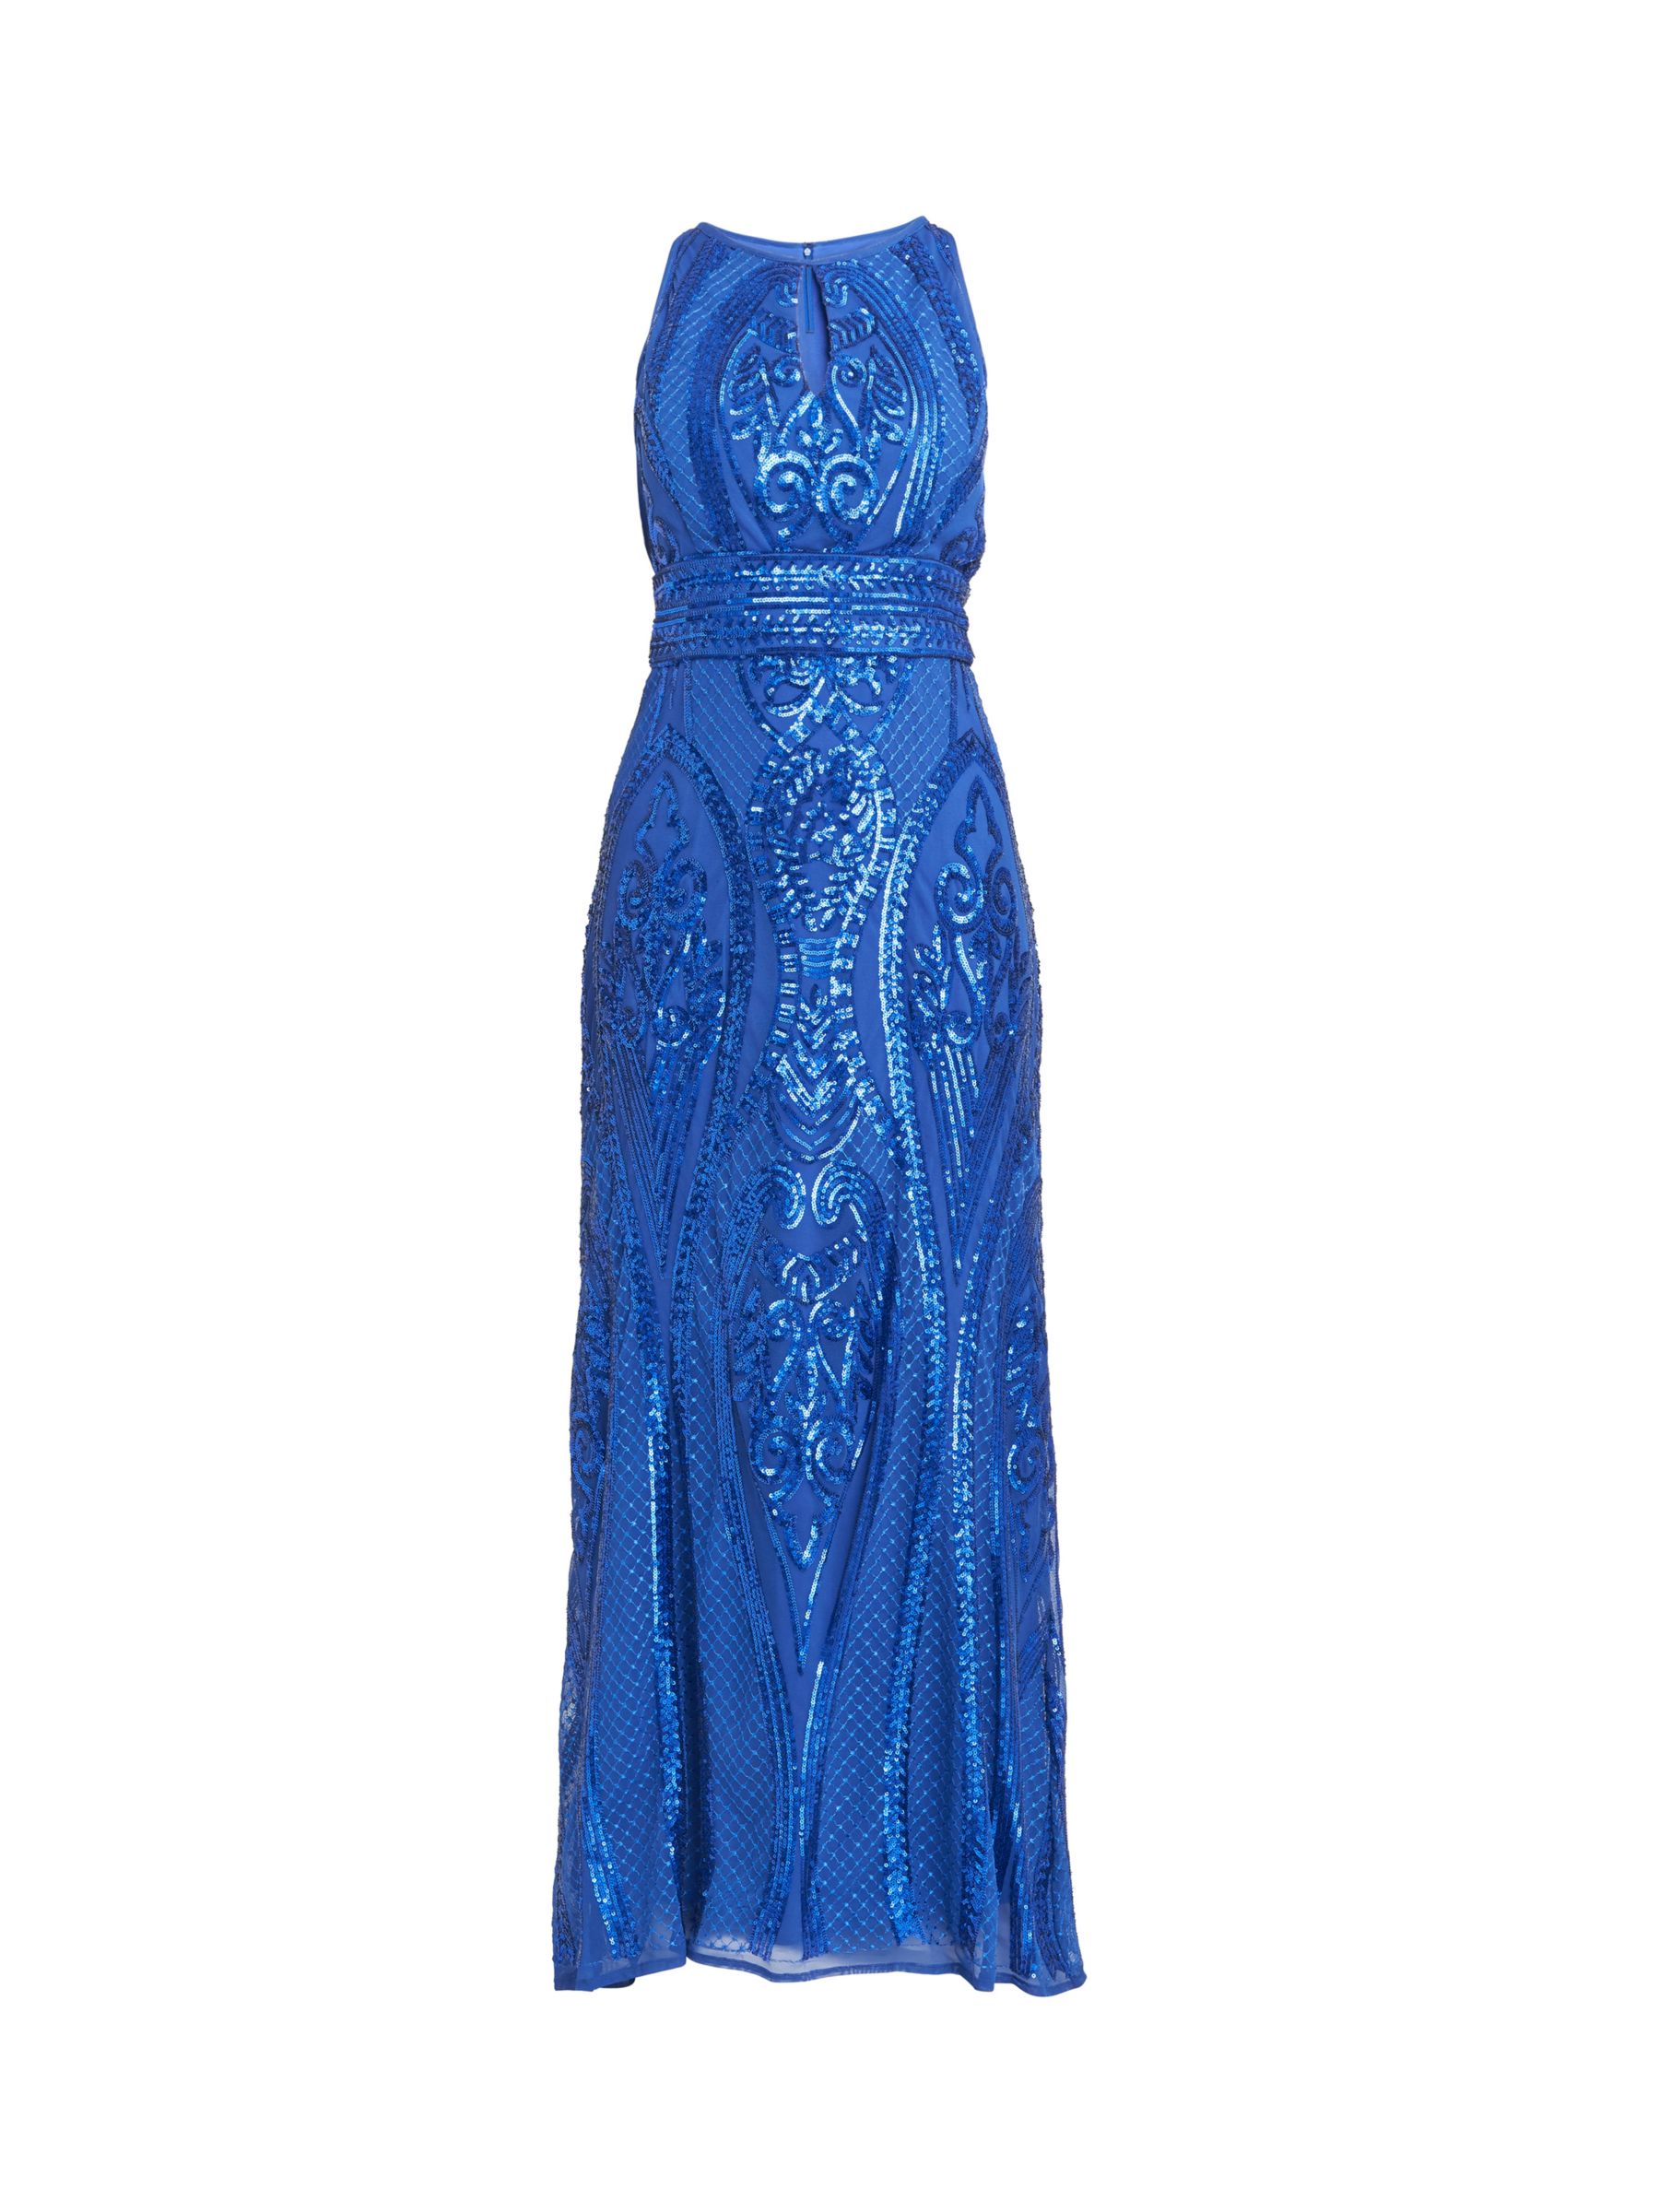 Gina Bacconi Natalie Sequin Bead Maxi Dress, Royal Blue at John Lewis ...